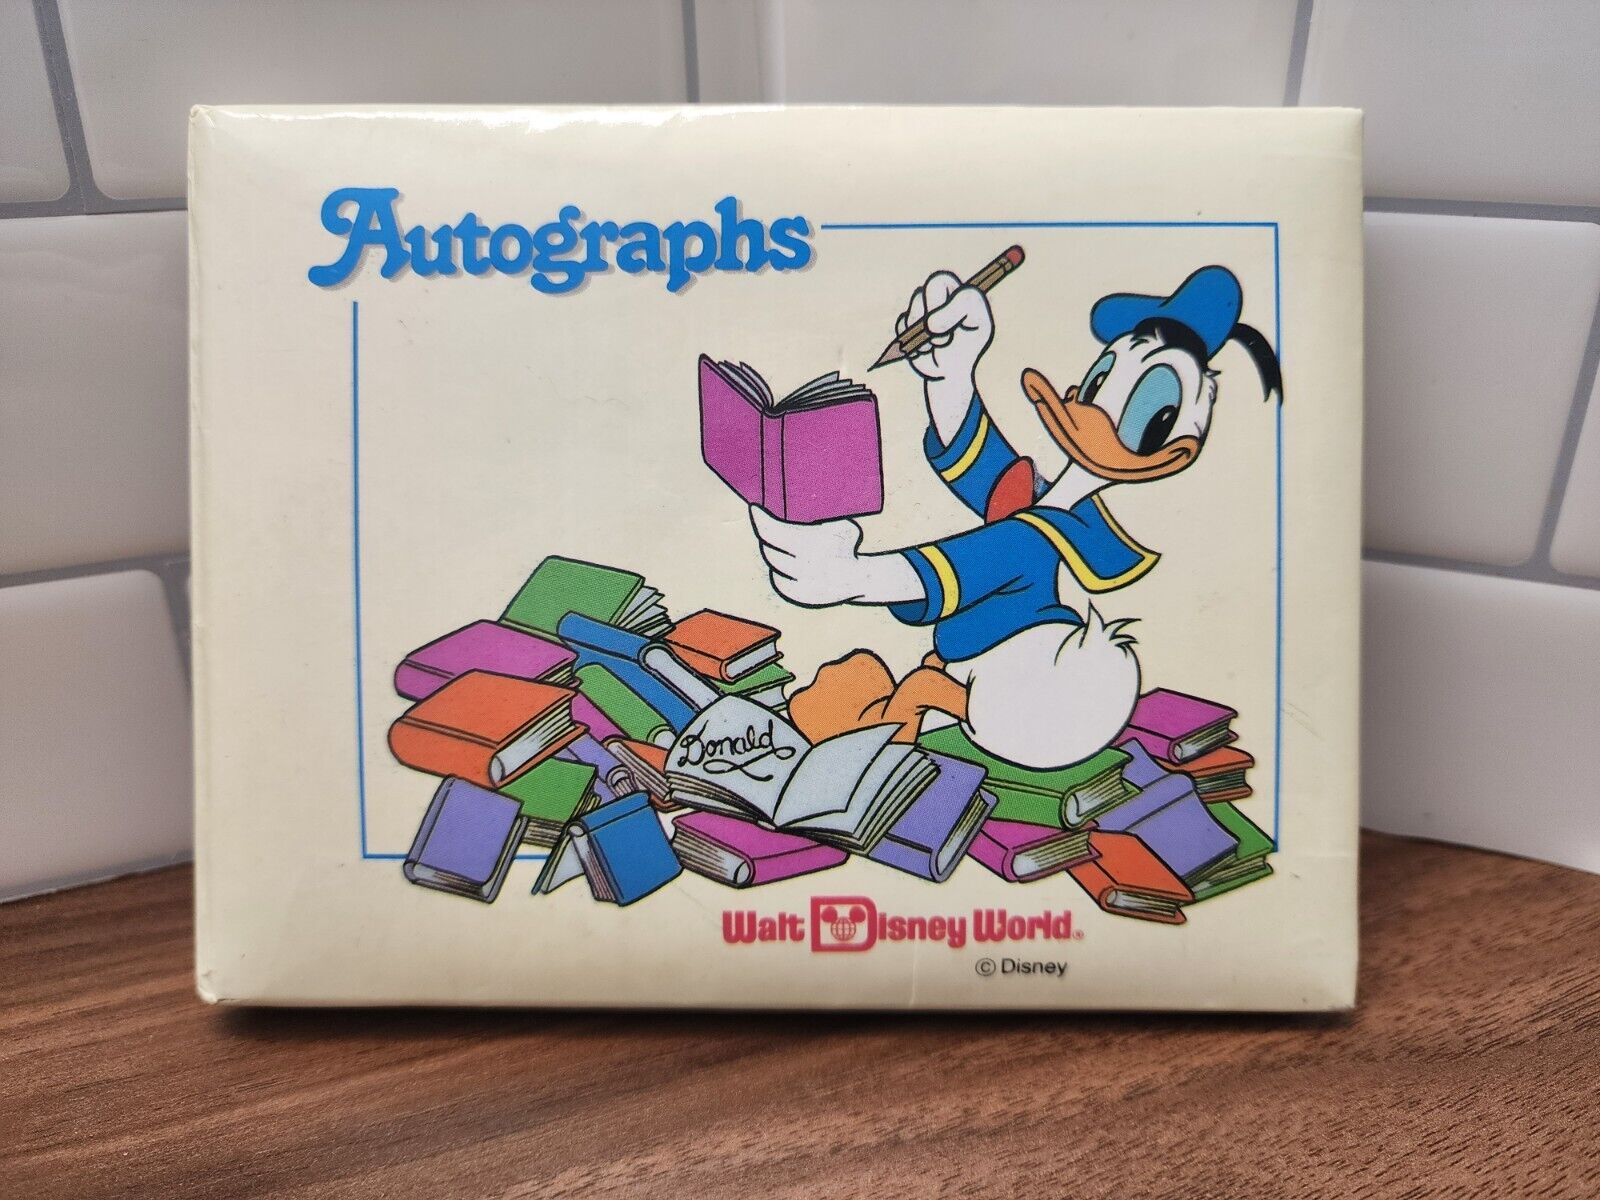 Vintage Walt Disney World Autograph Book W/ Donald Duck Cover & Some Autographs